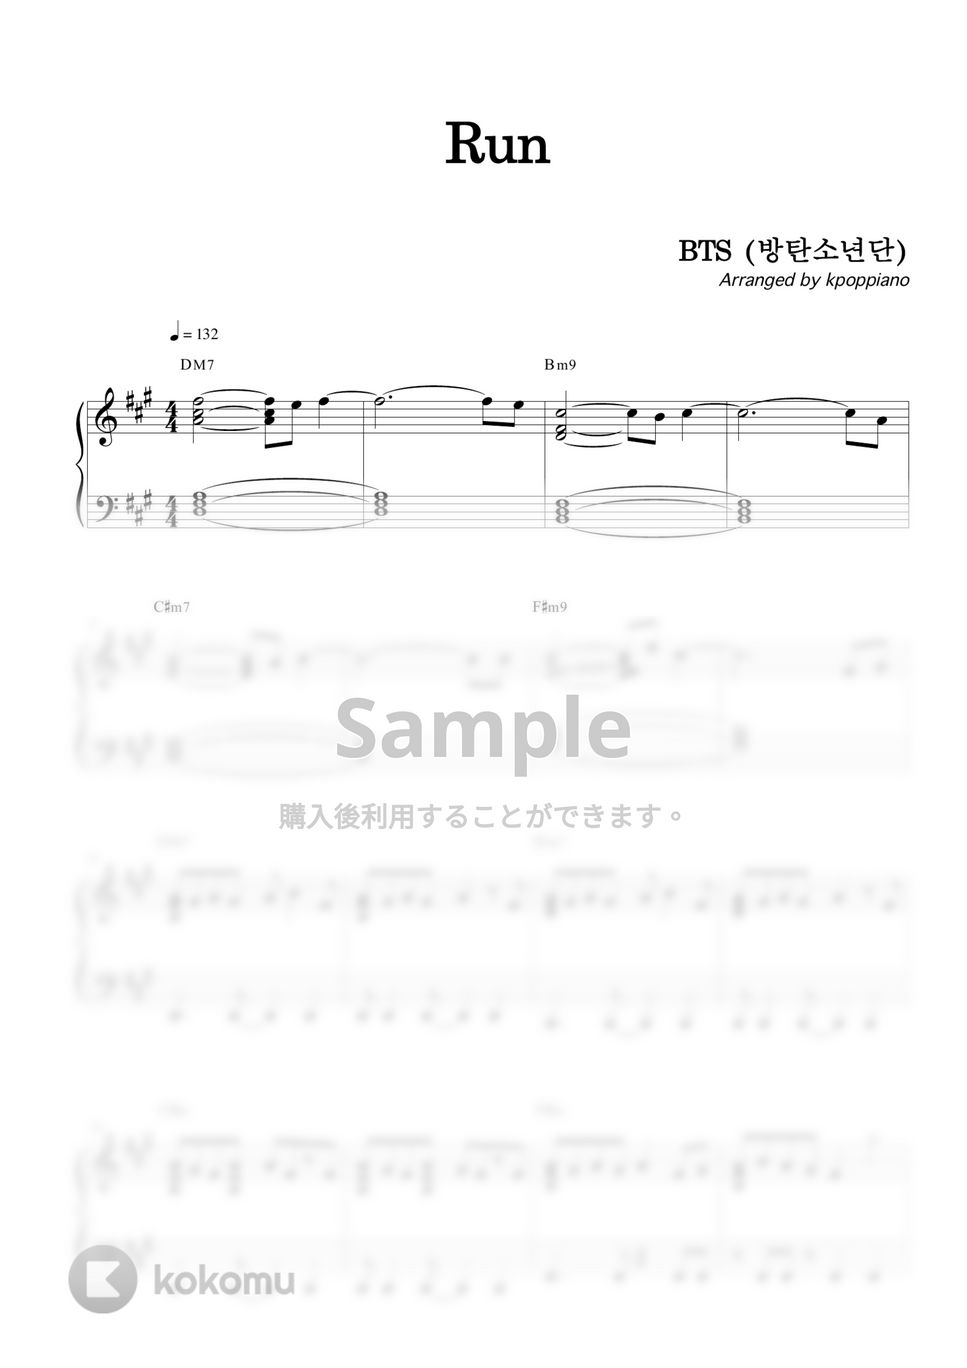 防弾少年団 (BTS) - RUN by KPOP PIANO